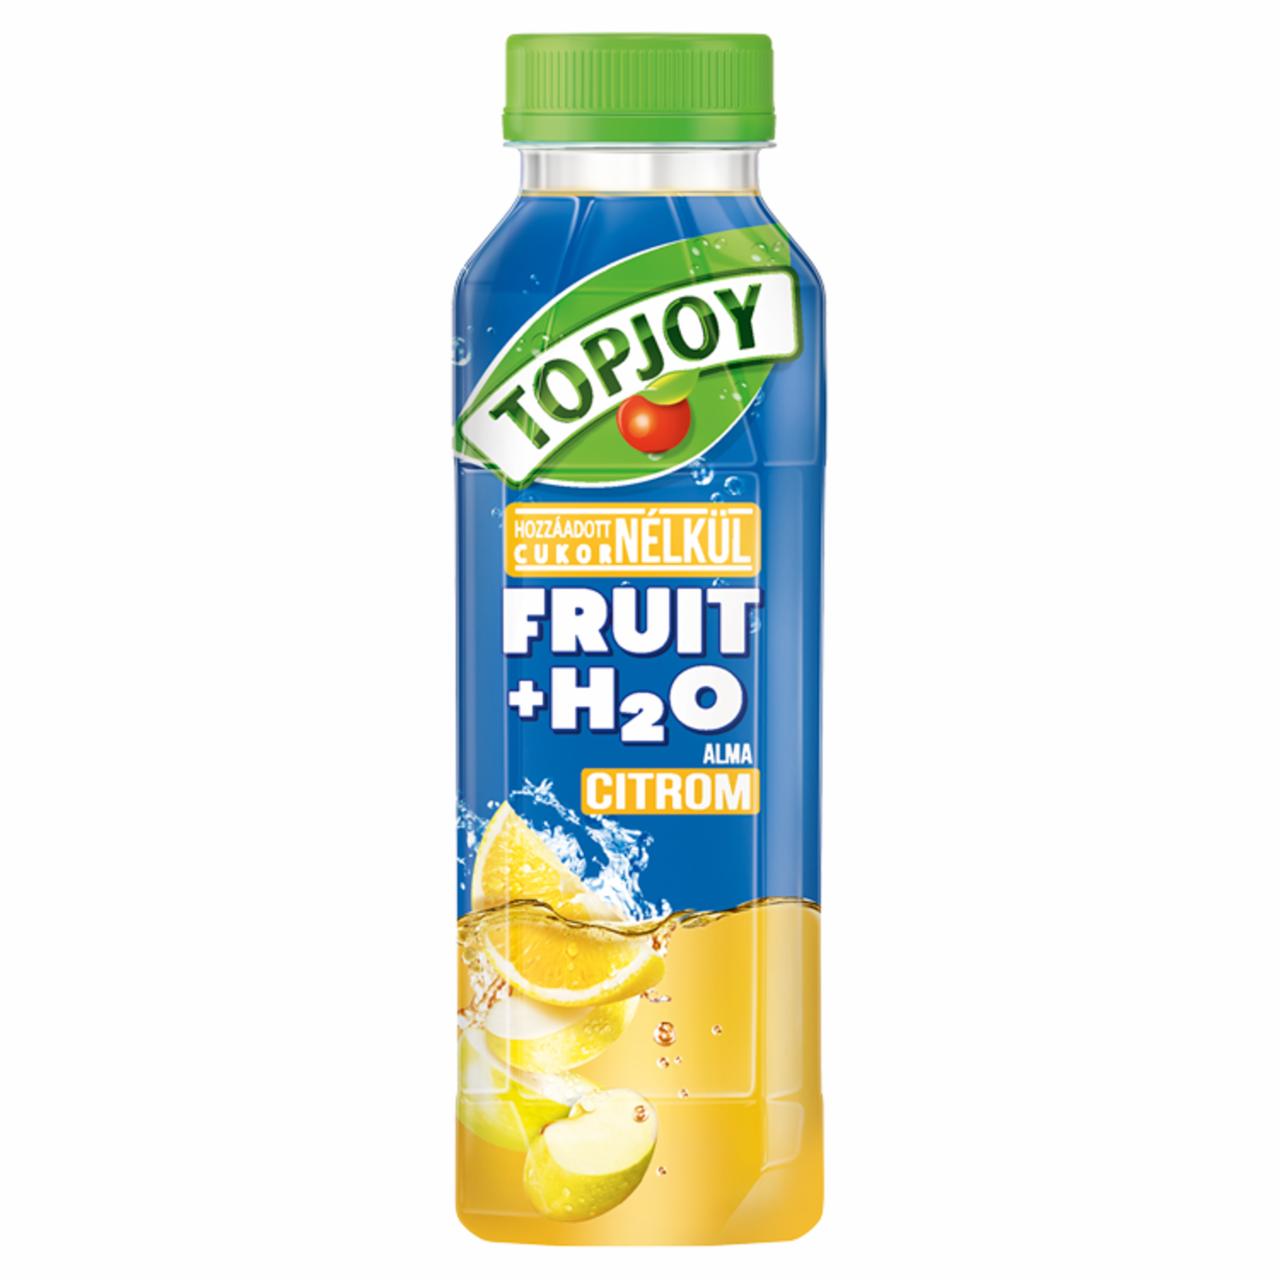 Képek - Topjoy Fruit+H₂O alma, citromital hozzáadott C-vitaminnal 400 ml